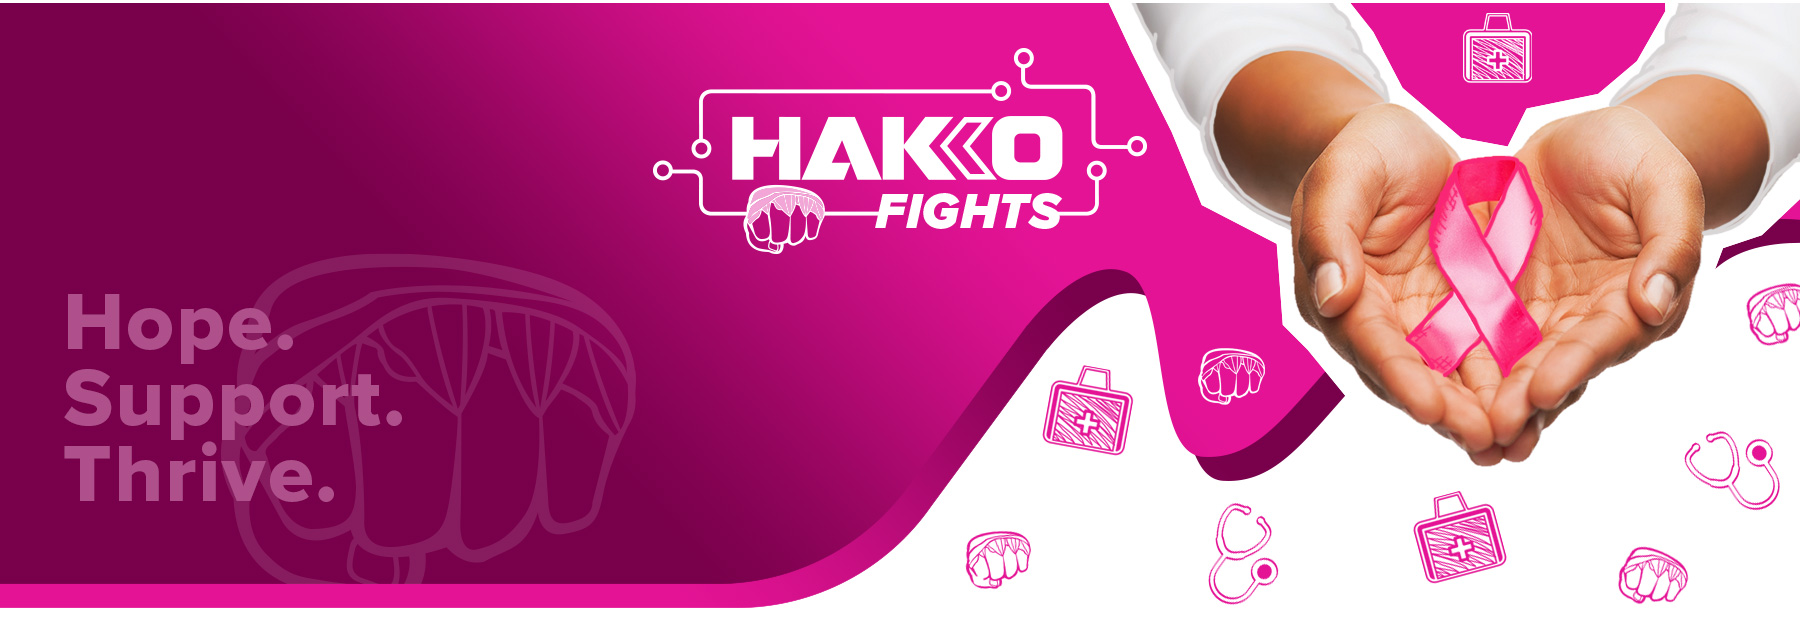 HAKKO-FIGHTS_Landing-PG2_03